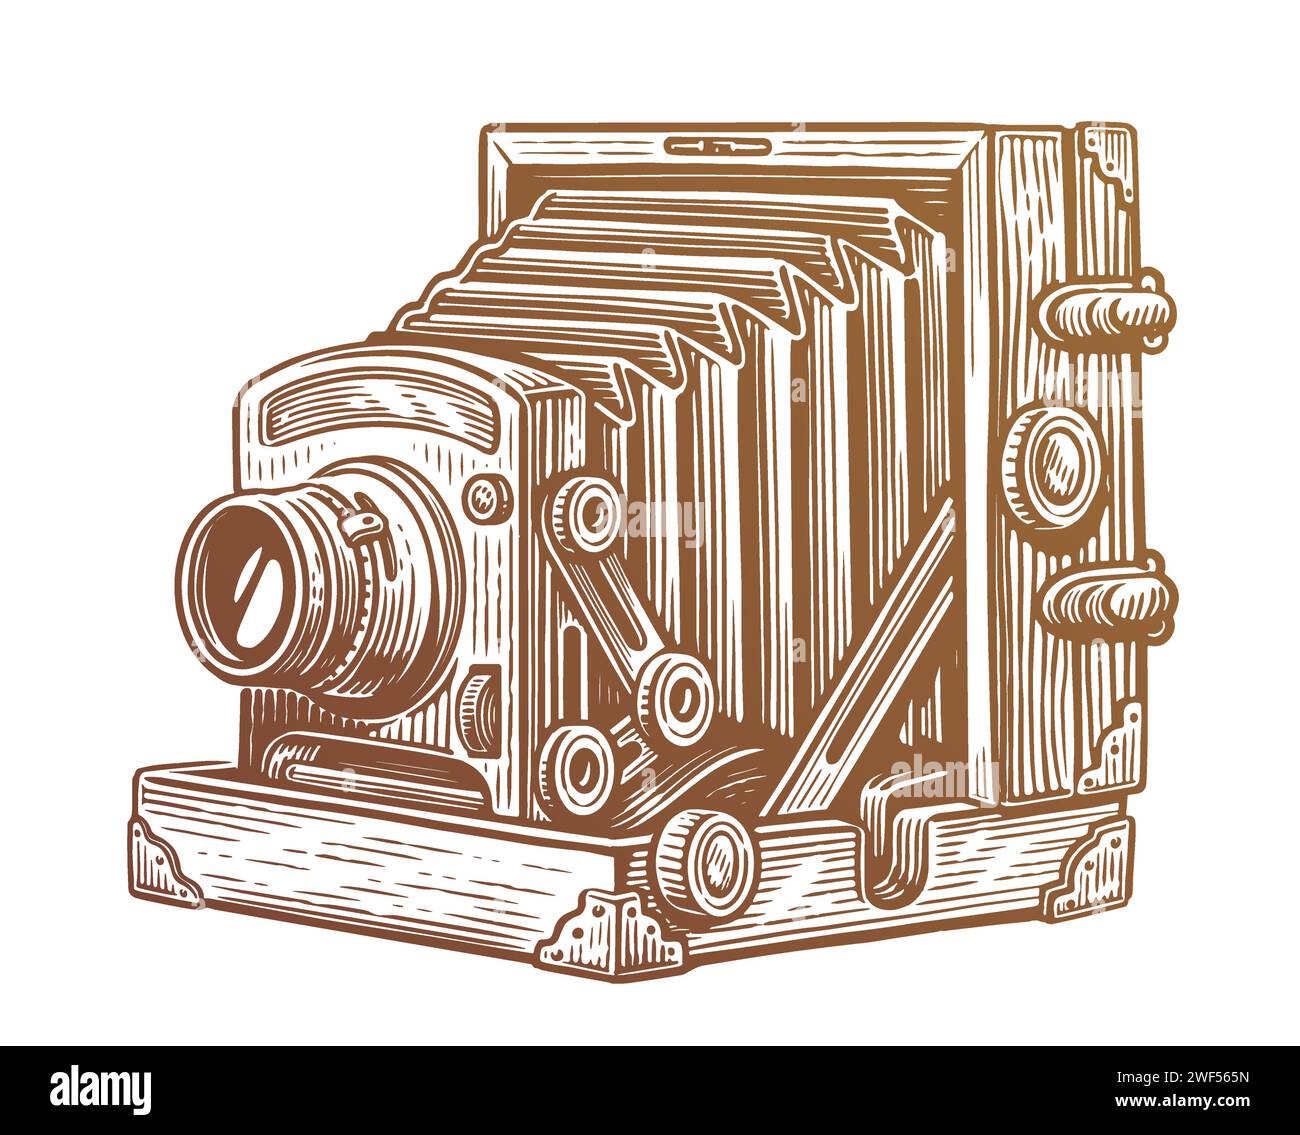 Vecchia fotocamera vintage con soffietti. Fotocamera in legno retrò. Illustrazione del vettore di schizzo Illustrazione Vettoriale